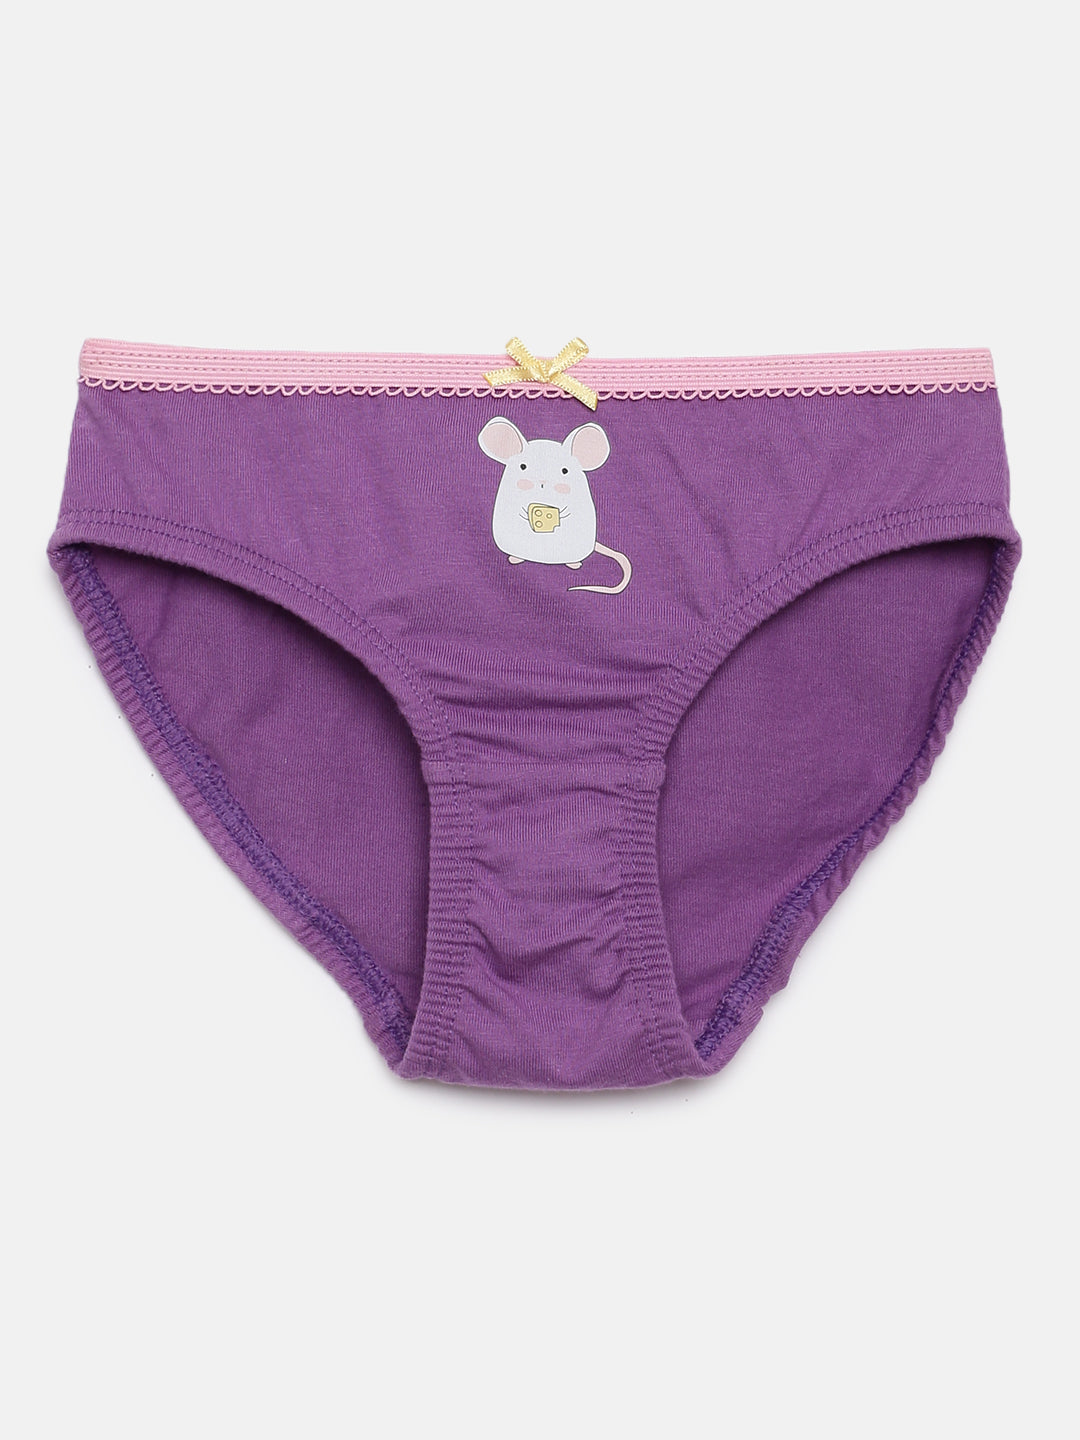 Violet cotton briefs for girls